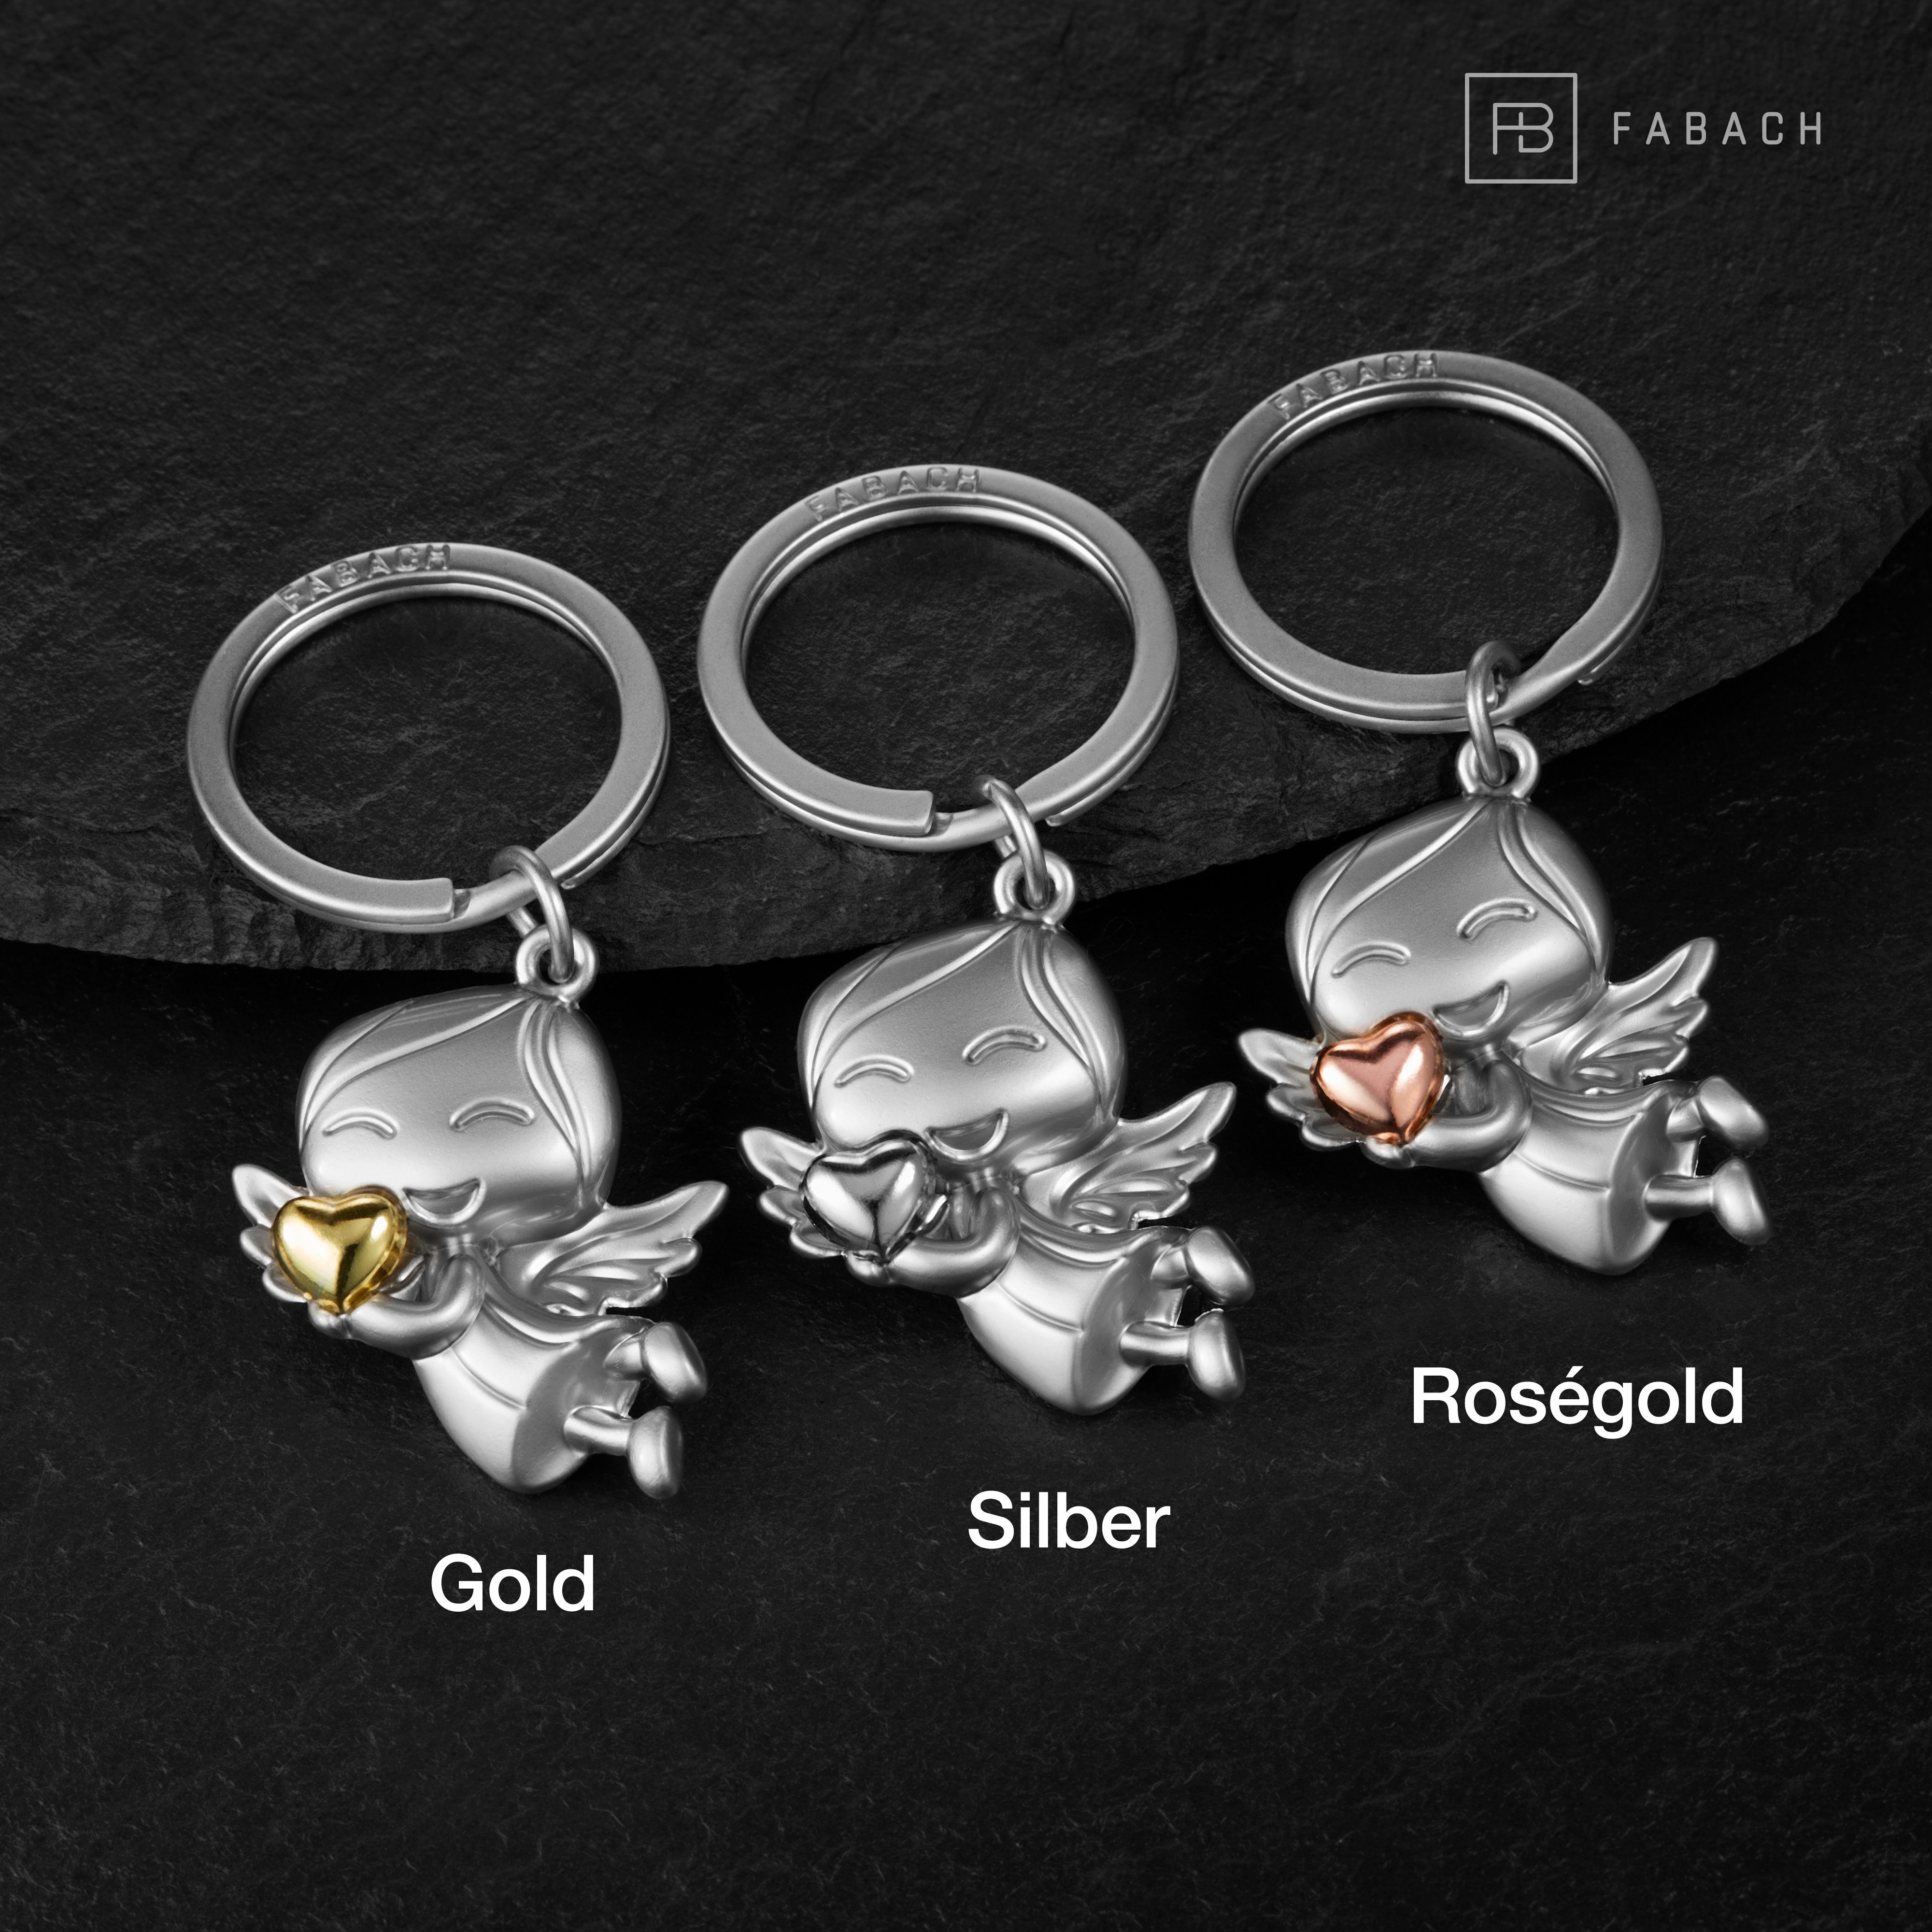 FABACH Schlüsselanhänger Schutzengel "Lucky" Glücksbringer Herz - Engel Glücksengel - mit Silber